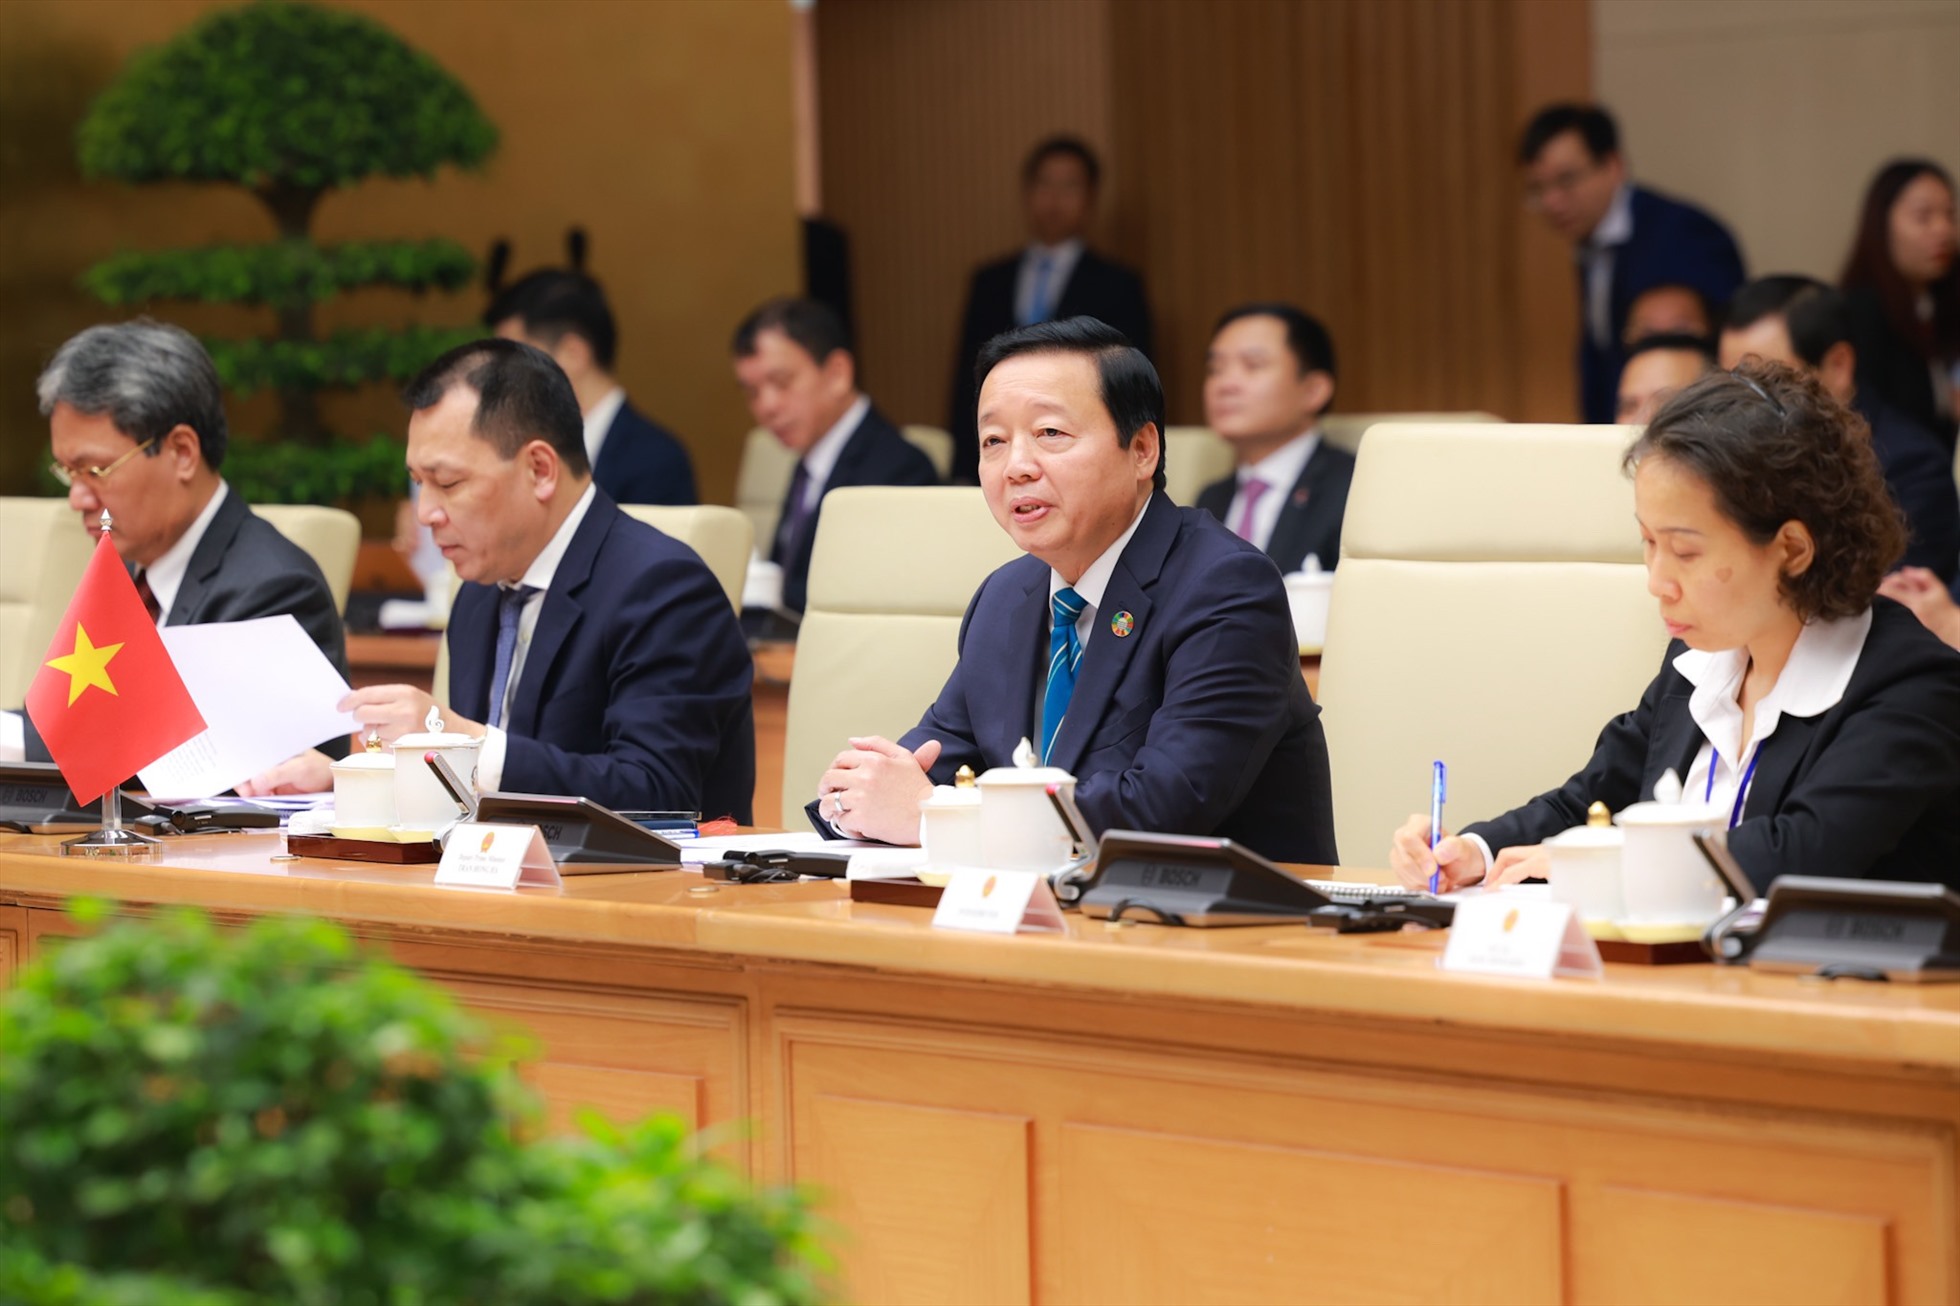 Việt Nam - Liên bang Nga duy trì cơ chế Ủy ban liên Chính phủ về hợp tác kinh tế - thương mại và khoa học - kỹ thuật, thành lập từ năm 1992 và được nâng cấp lên cấp Phó Thủ tướng từ năm 2011. Ảnh: Hải Nguyễn